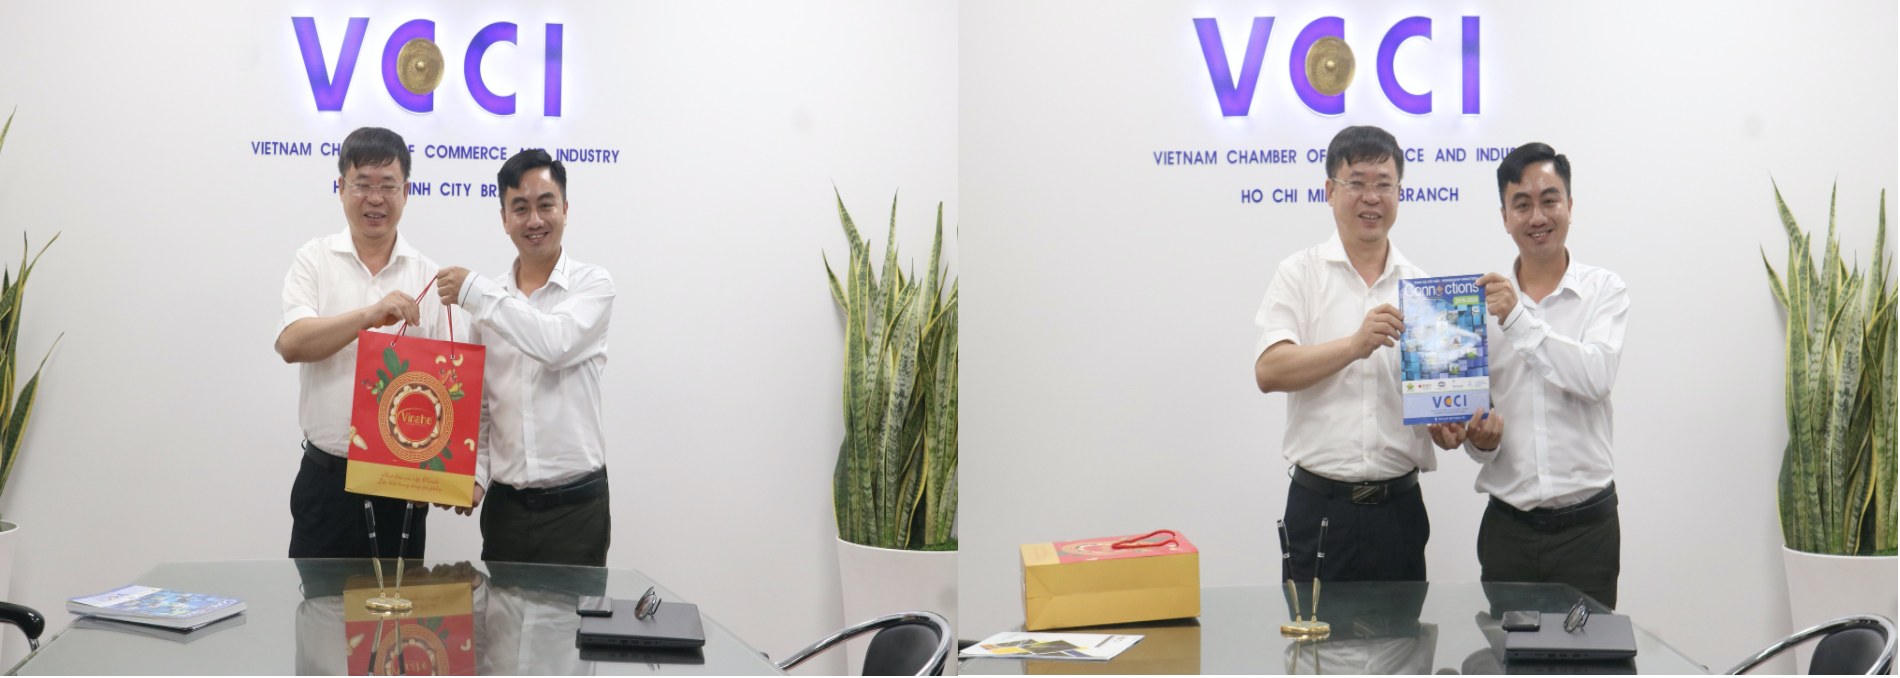 VCCI-HCM sẽ “tiếp sức” để doanh nhân Bình Phước vươn lên trong thời đại 4.0